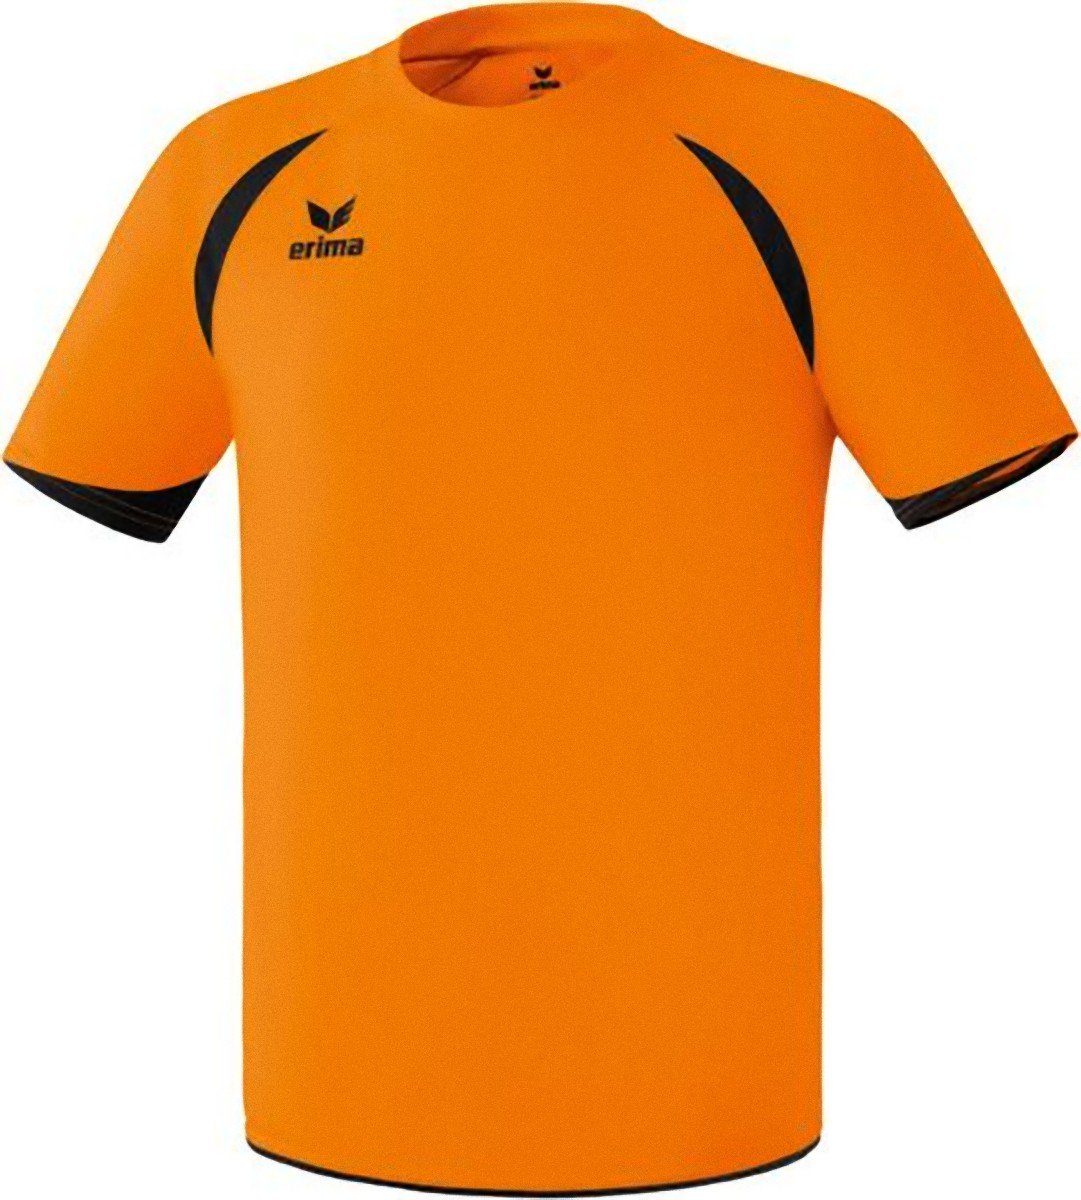 Erima Funktionsshirt Tanaro Trikot Sportshirt Fussball T-Shirt Funktionsshirt Shirt Handball Laufshirt Orange